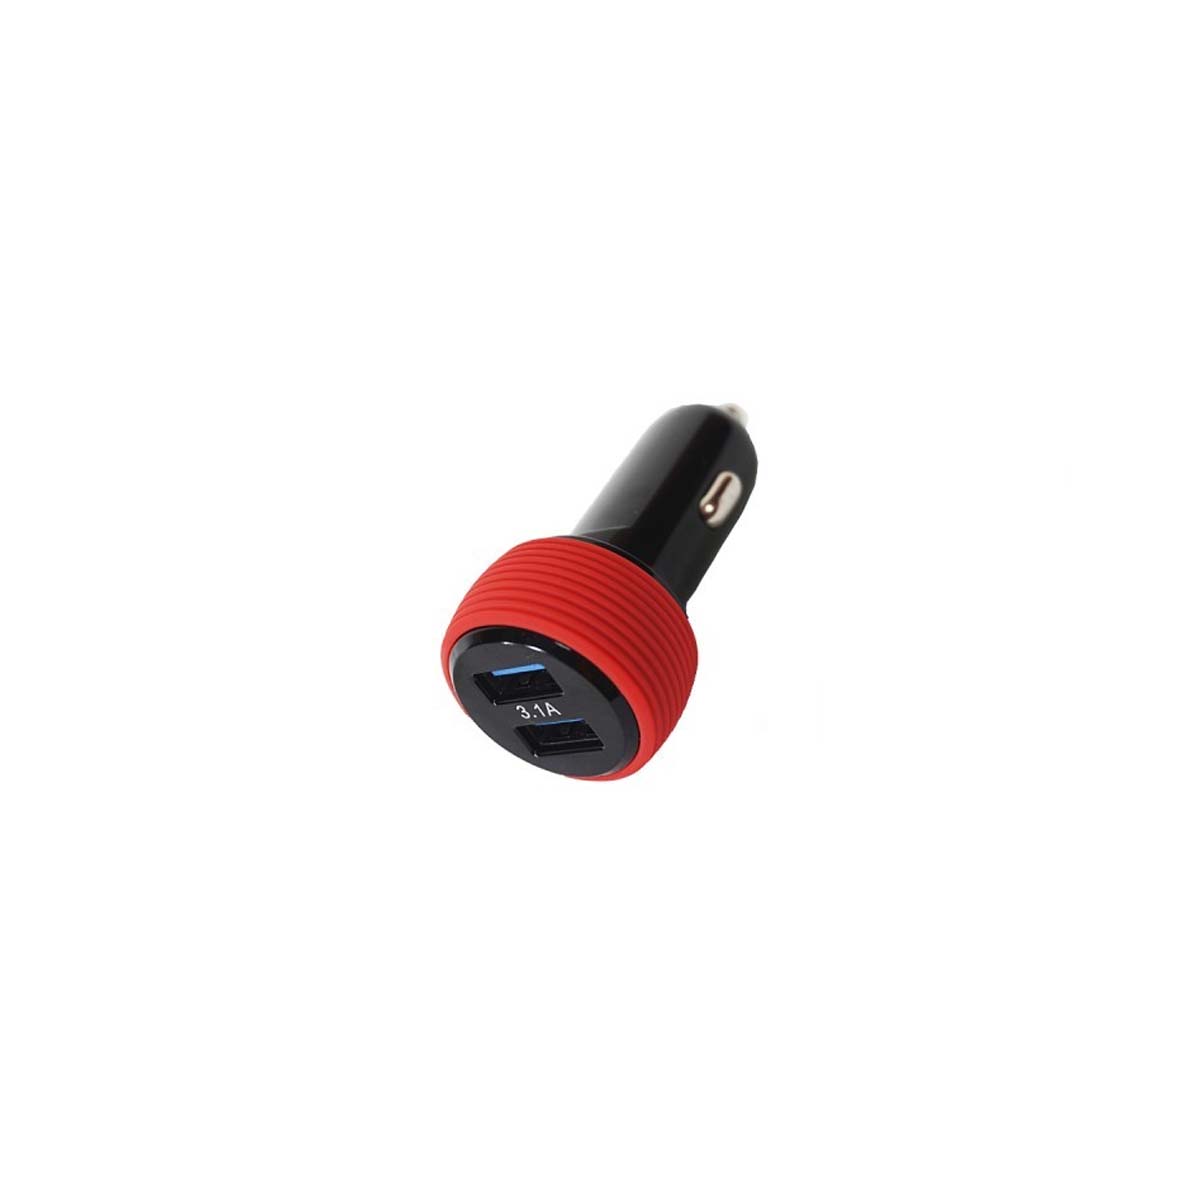 АЗУ (Автомобильное зарядное устройство) MRM MR-31A, 2 USB, 3.1А, цвет черно красный